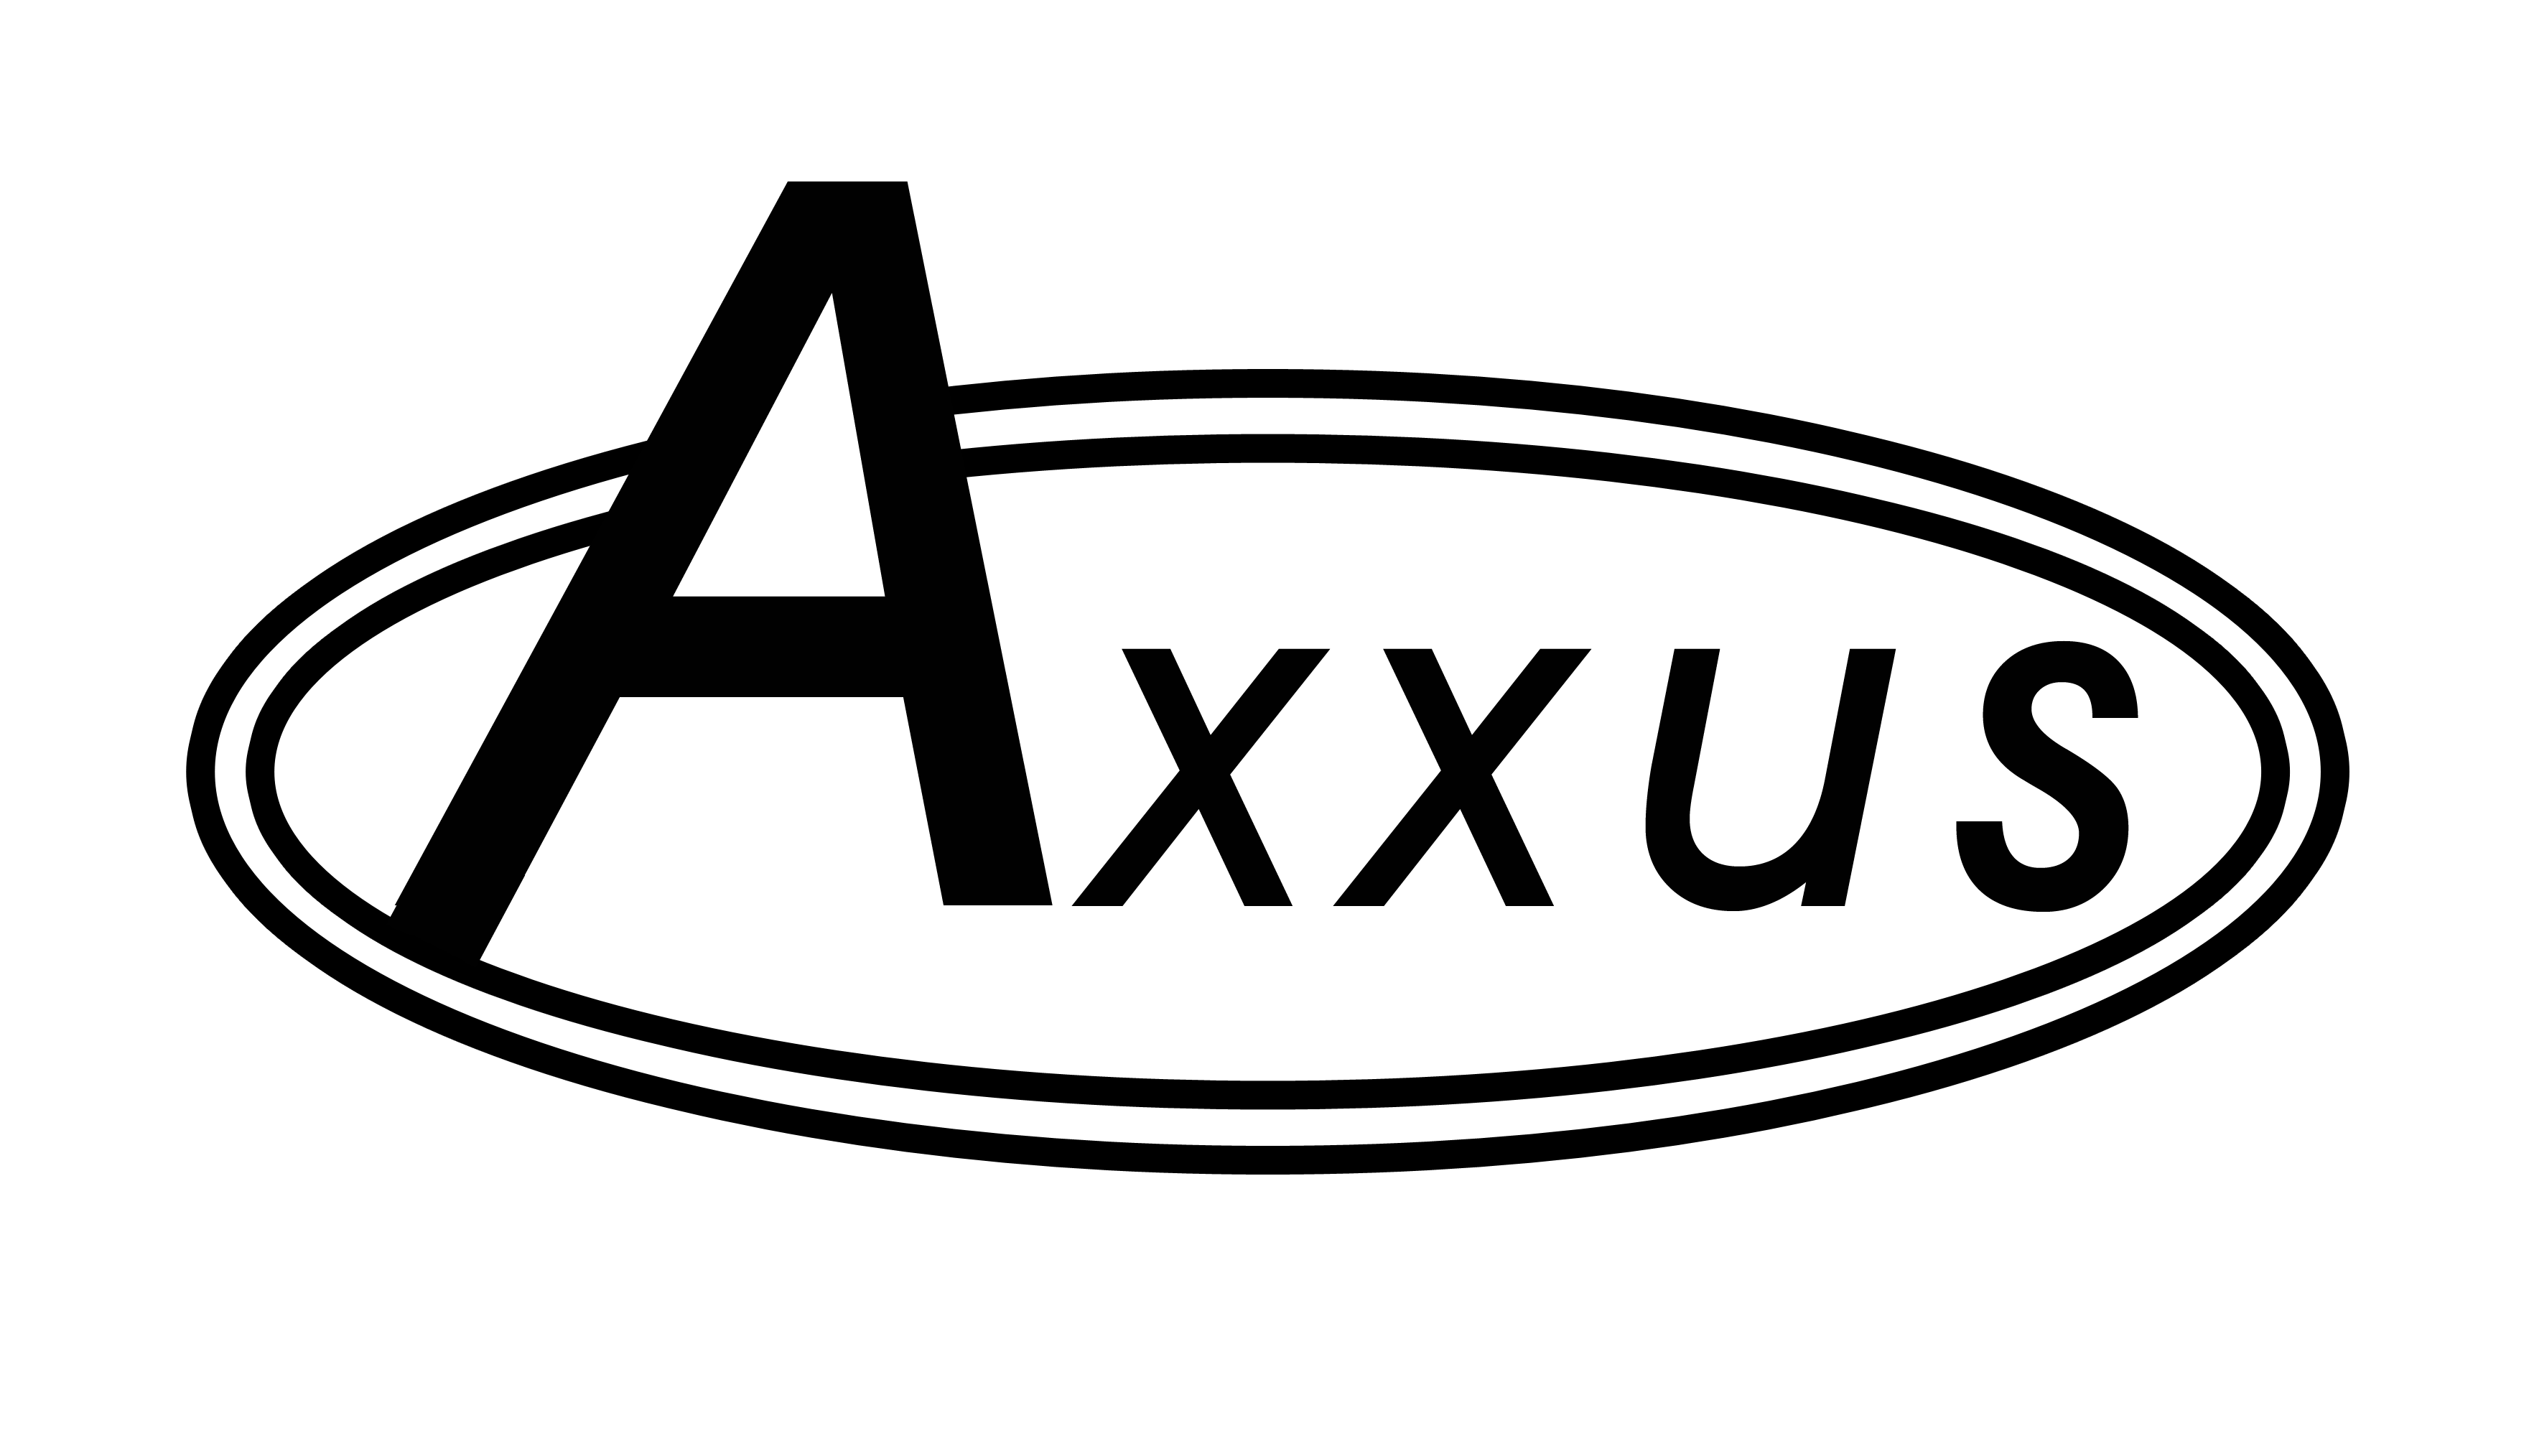 Axxus